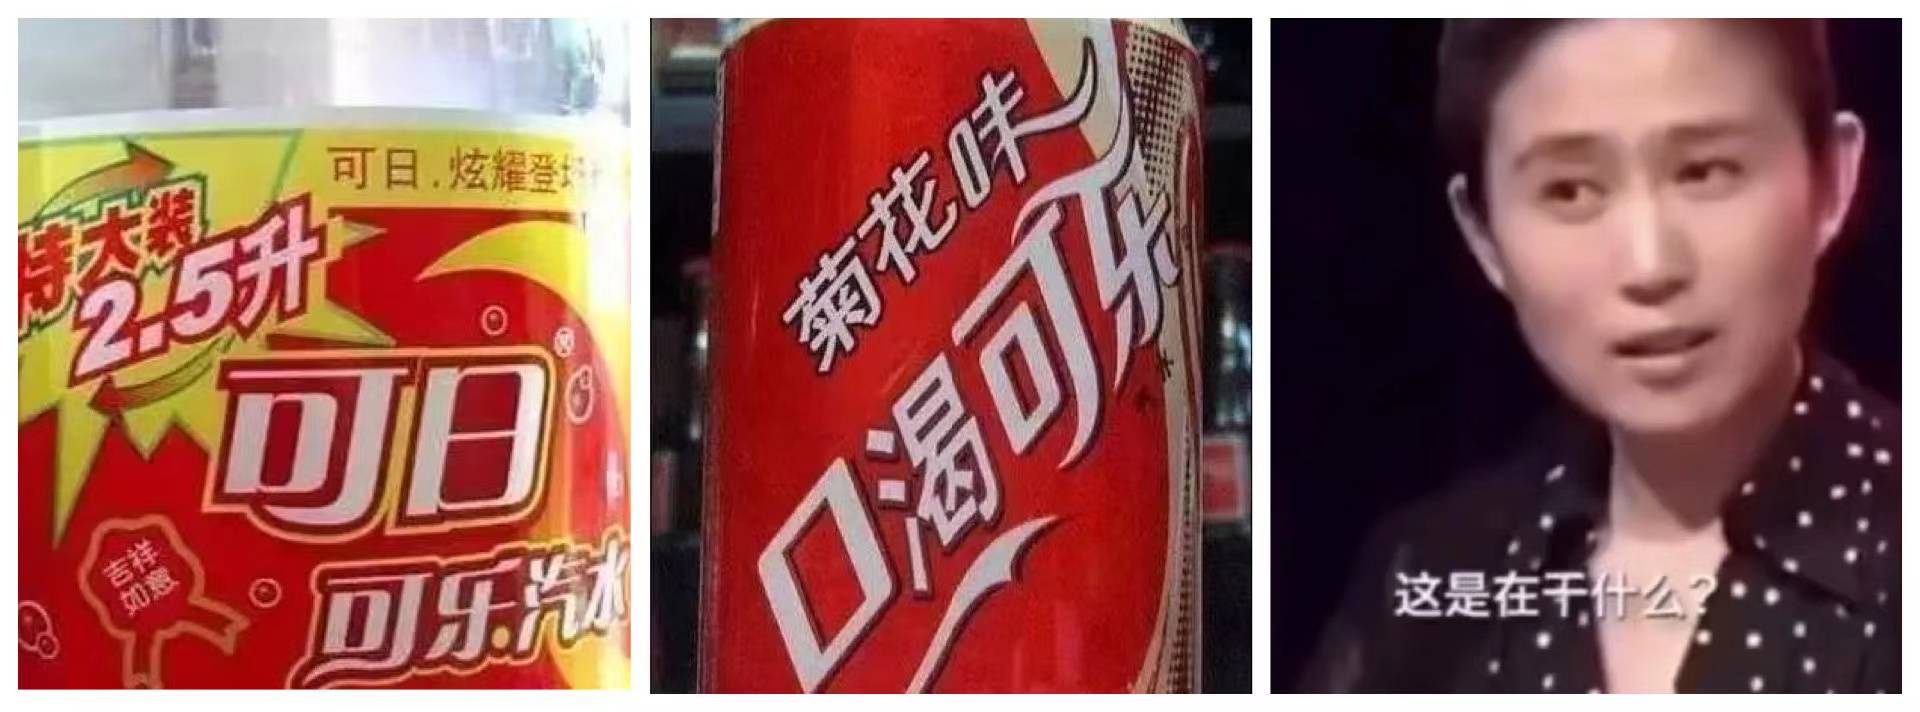 WechatIMG2588 - La “Chinese Coke” risorge, ma non sarà la Coca a battere la Coca-Pepsi